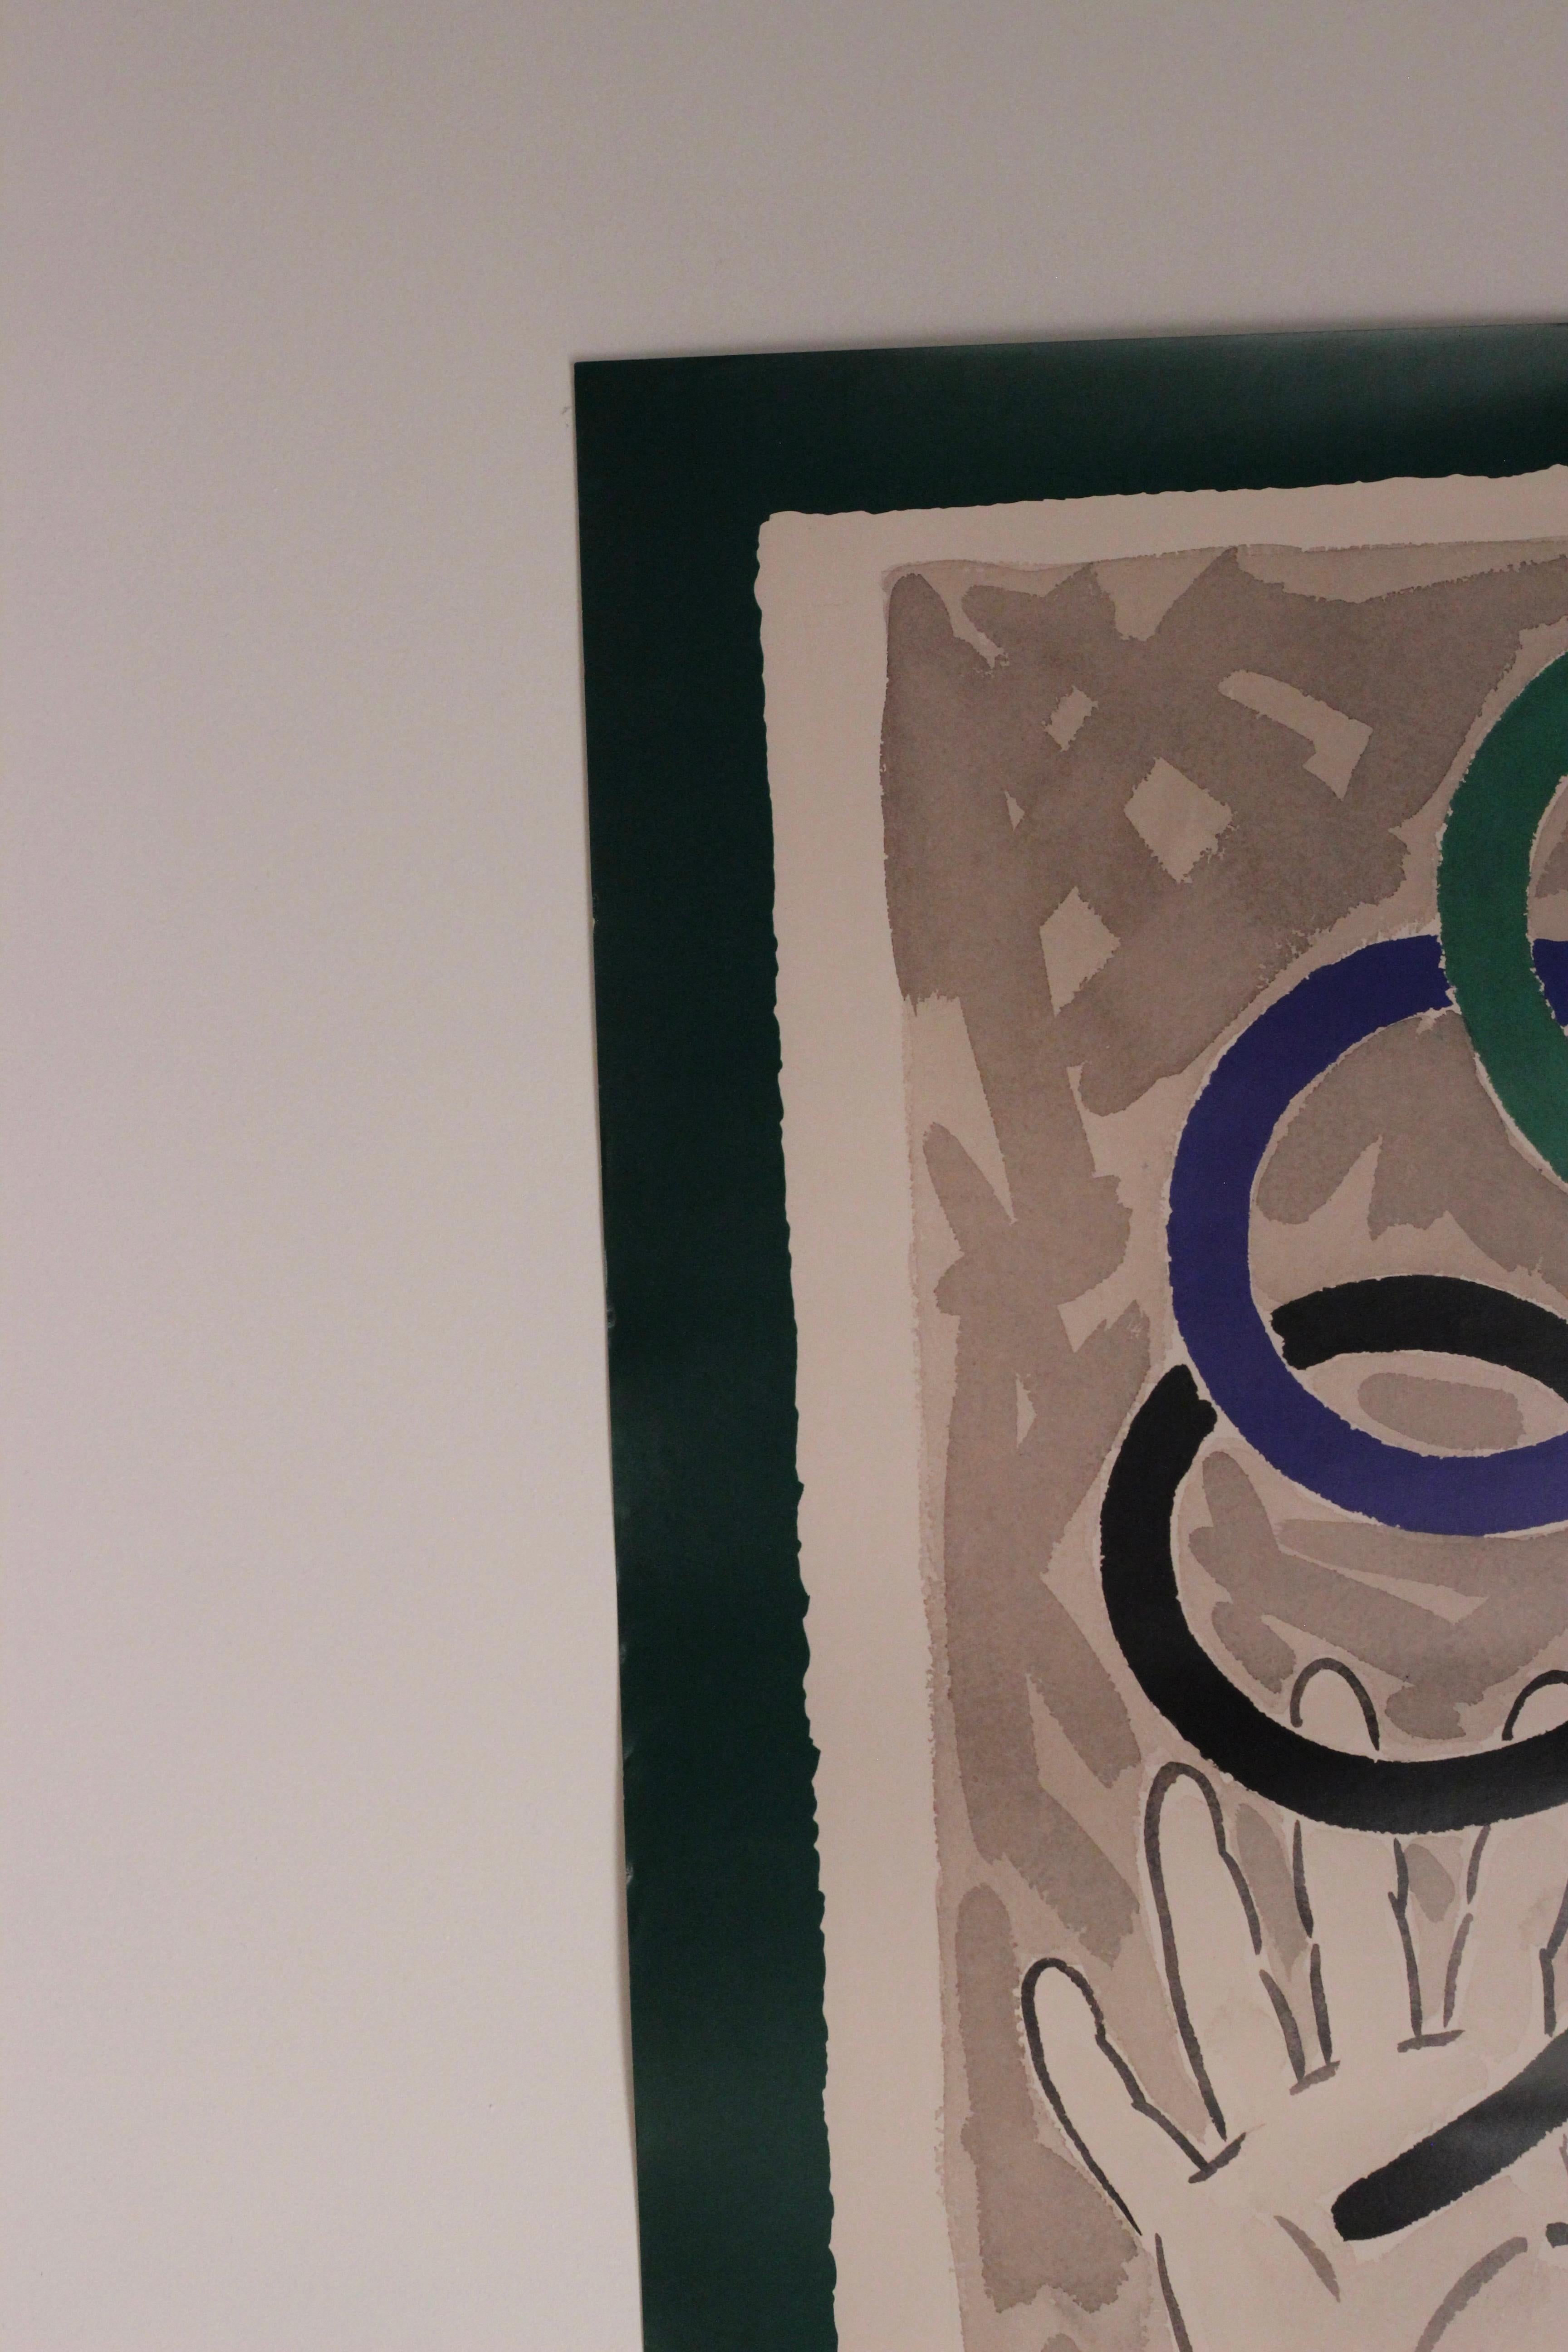 Affiche originale des Jeux Olympiques d'été de Barcelone pour les XXVe Jeux, réalisée par l'artiste Robert Llimós.

Robert Llimós est né le 19 octobre 1943 à Barcelone. 
Il a suivi une formation artistique à l'école d'art Massana et à l'école